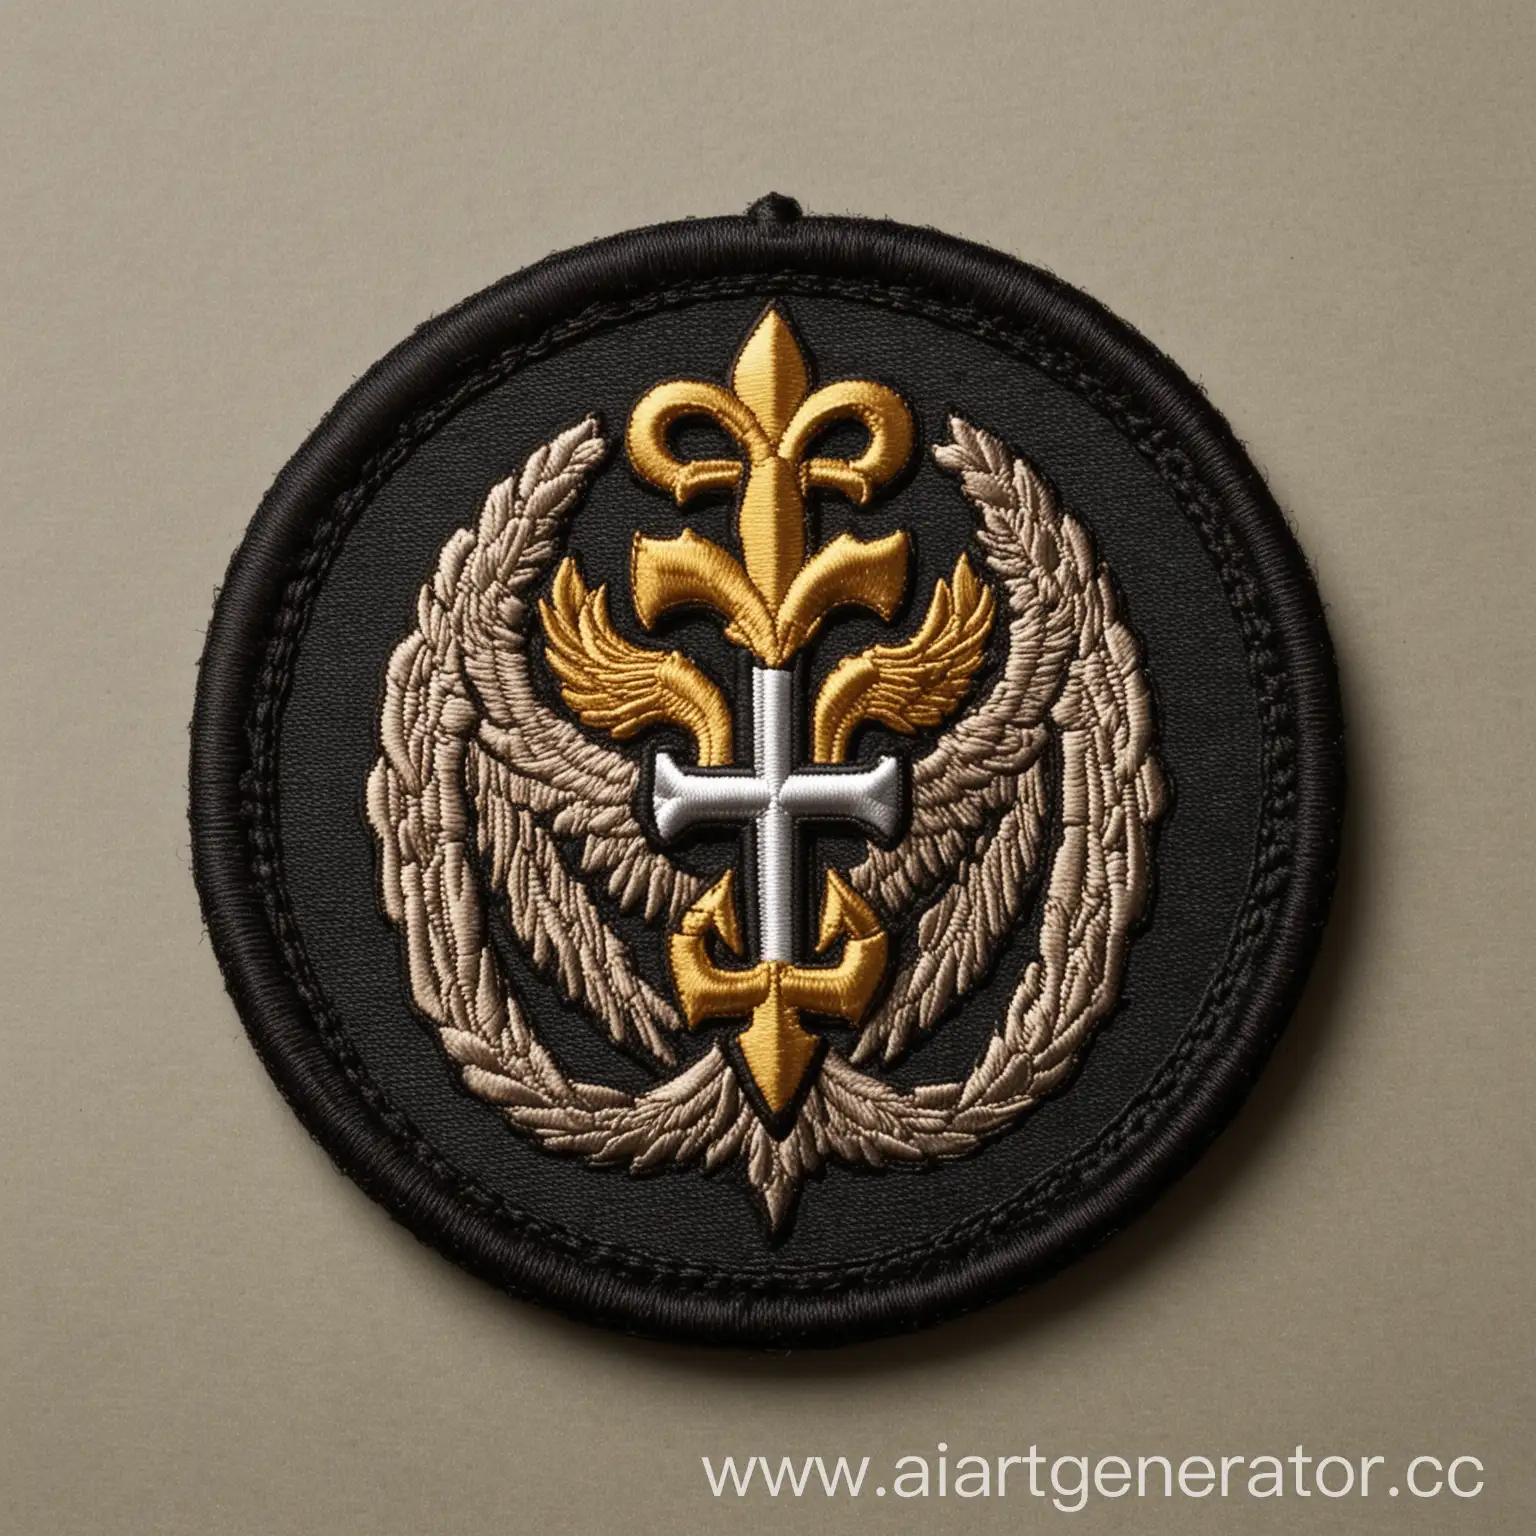 Elite-Military-Team-Emblem-Saints-of-Los-Angeles-Soldier-Patch